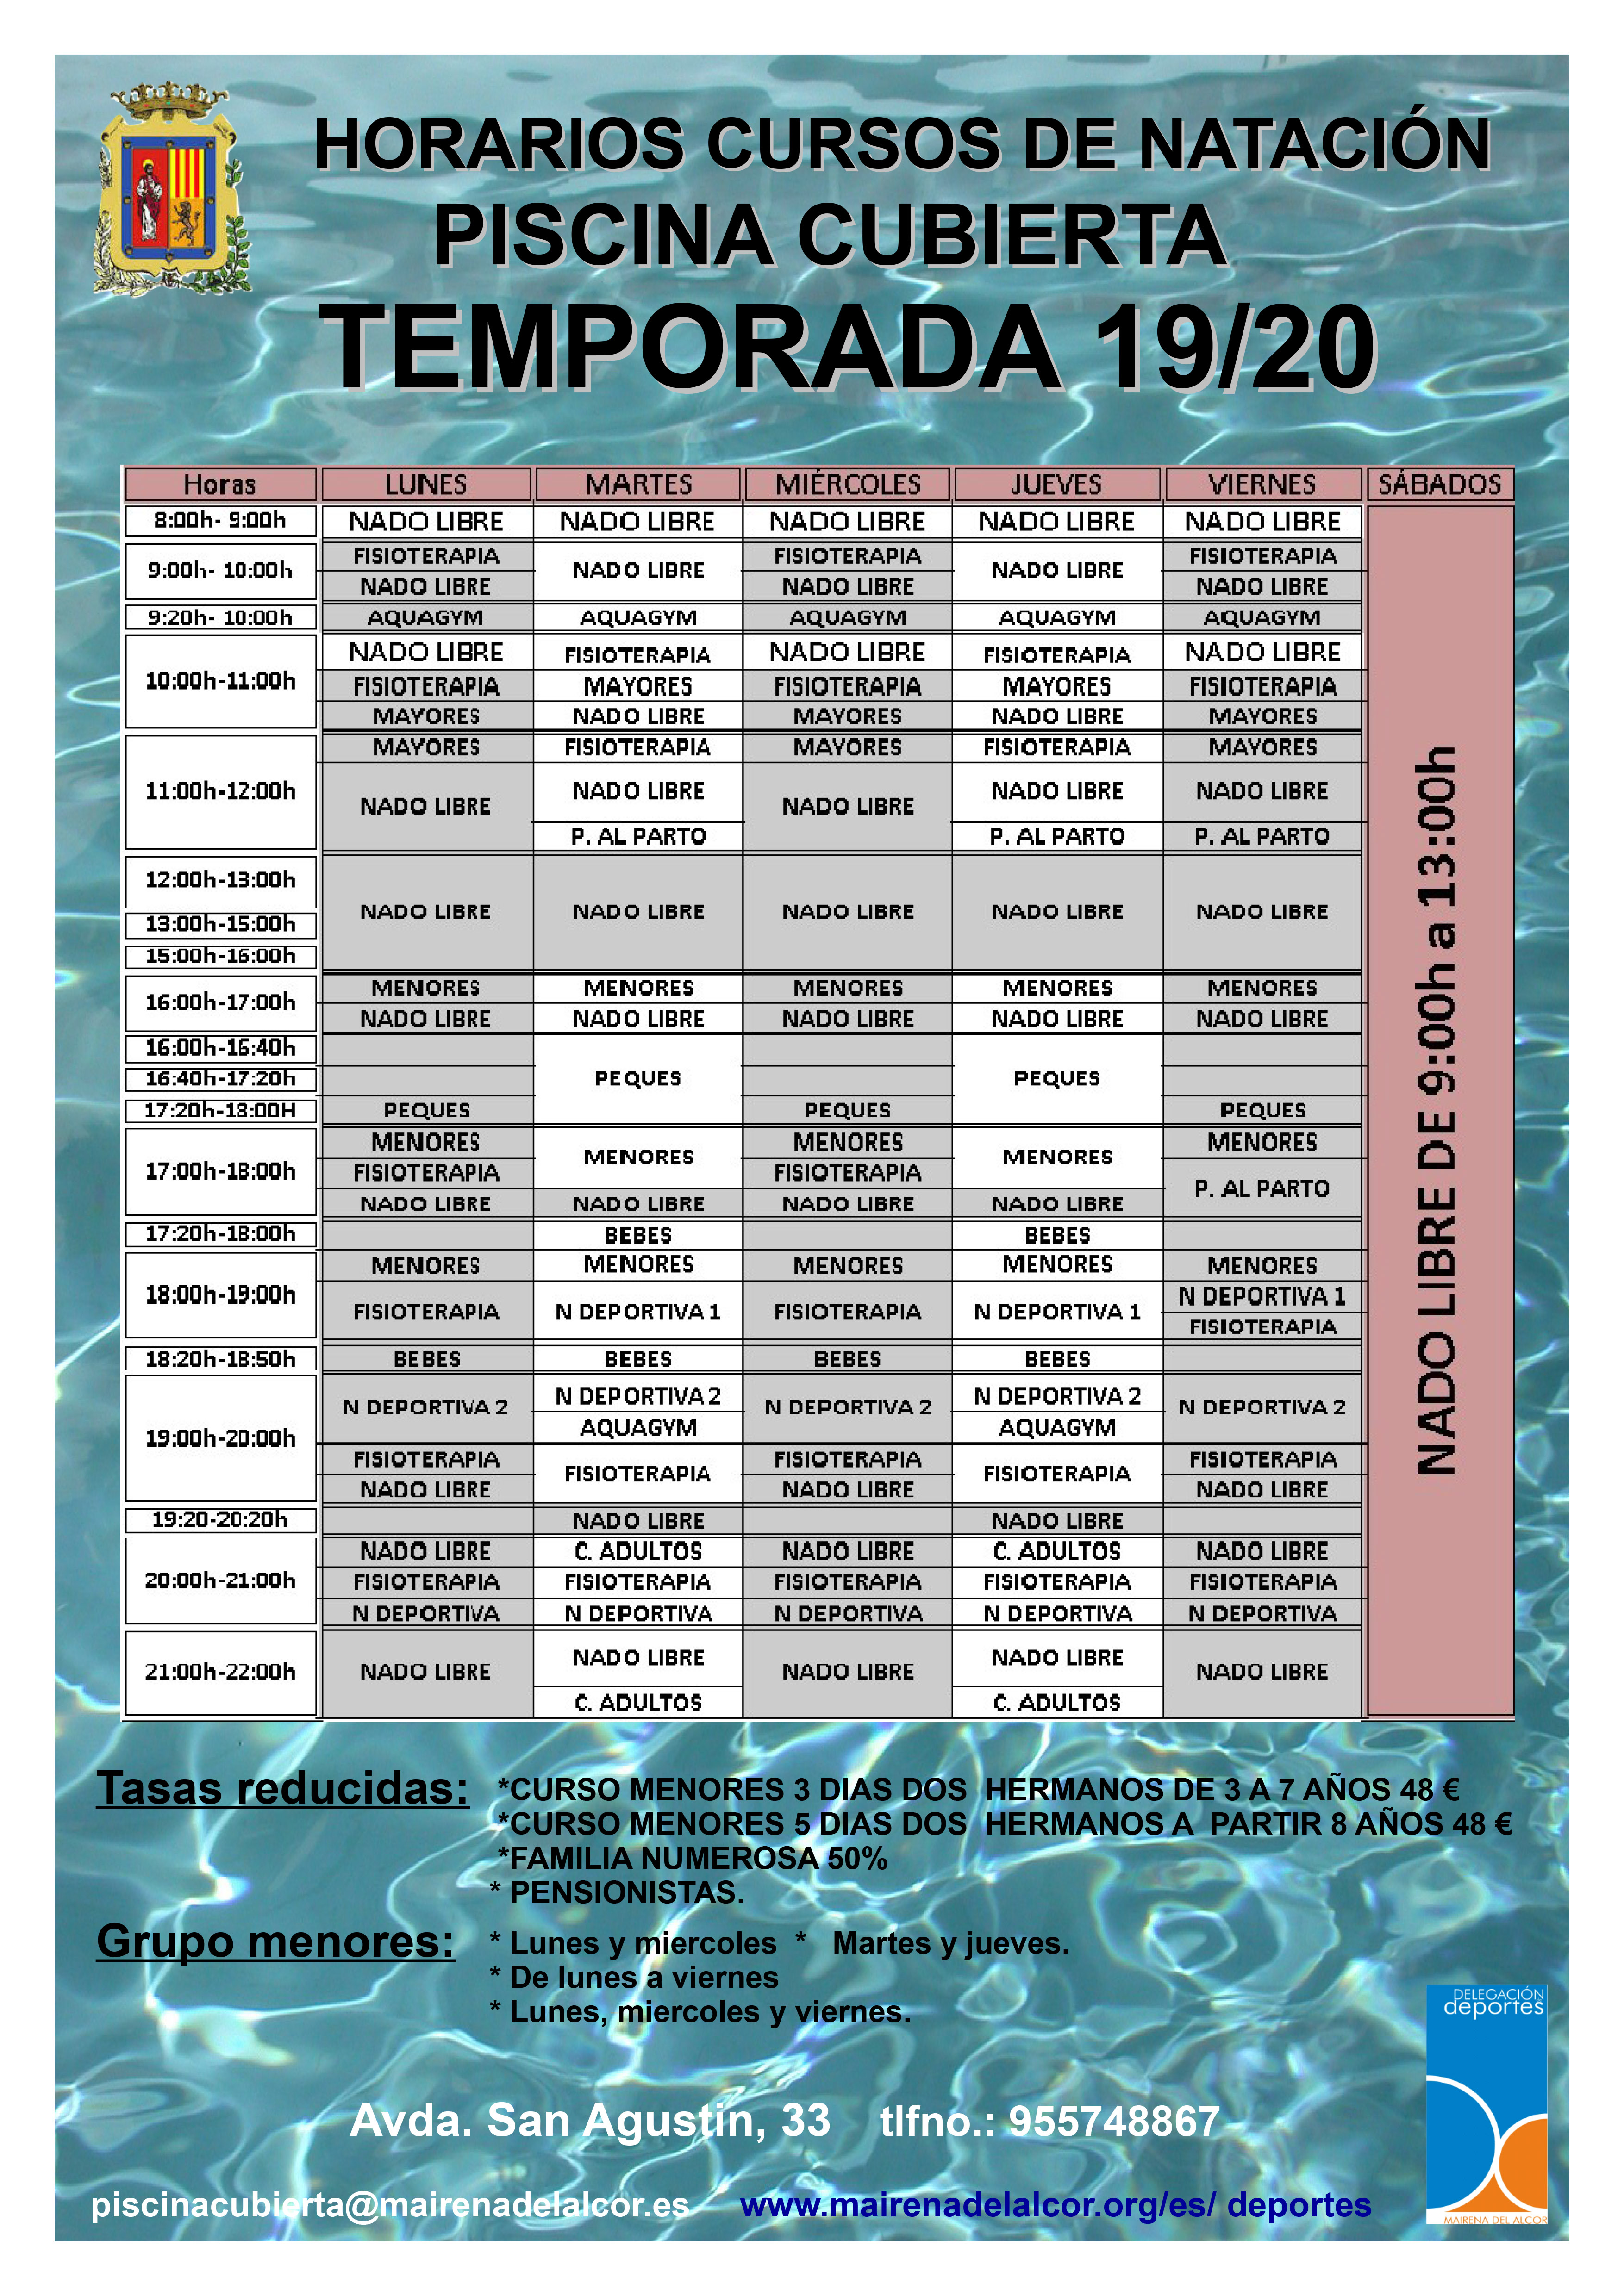 Horarios cursos de natación 2019-2020 noviembre